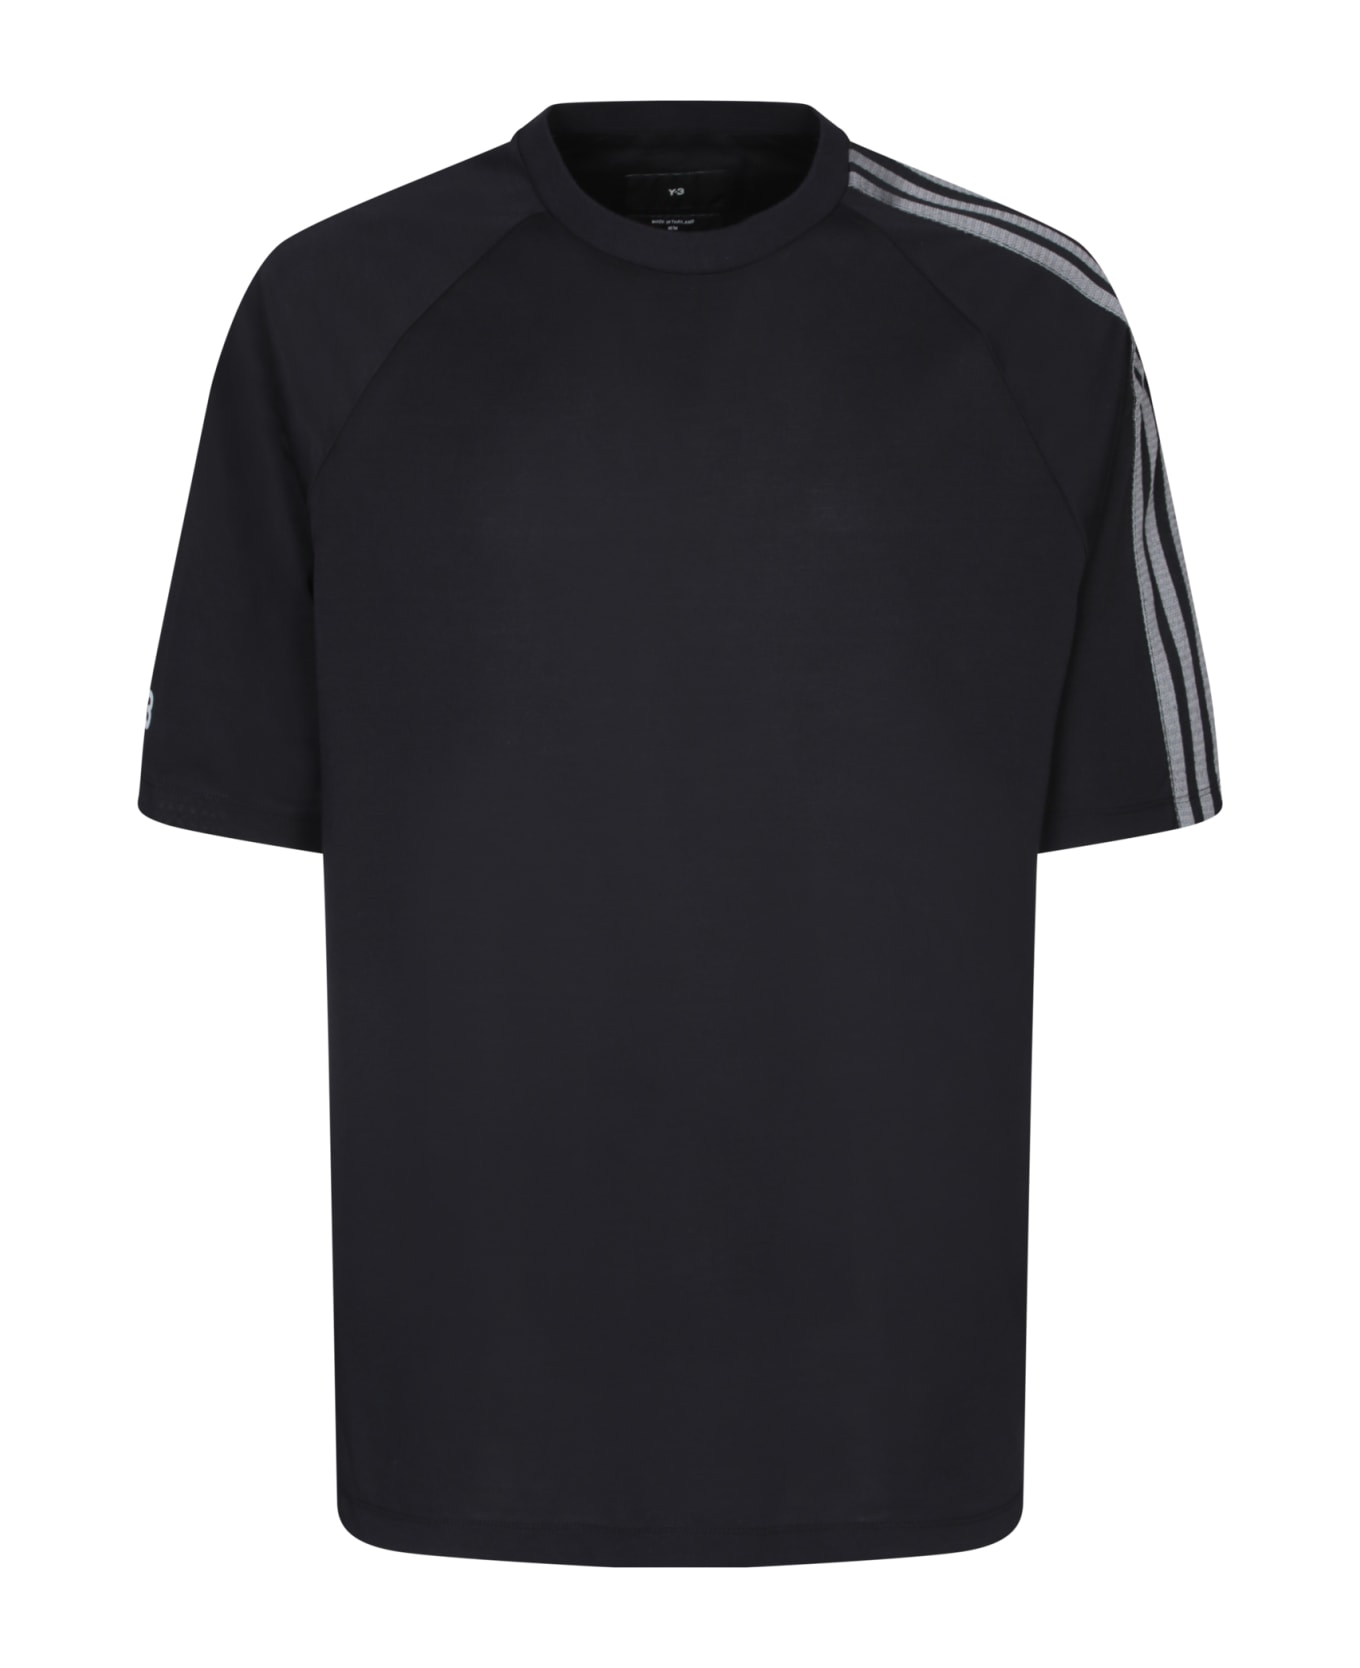 Y-3 Adidas Y-3 3s Black T-shirt - Black シャツ